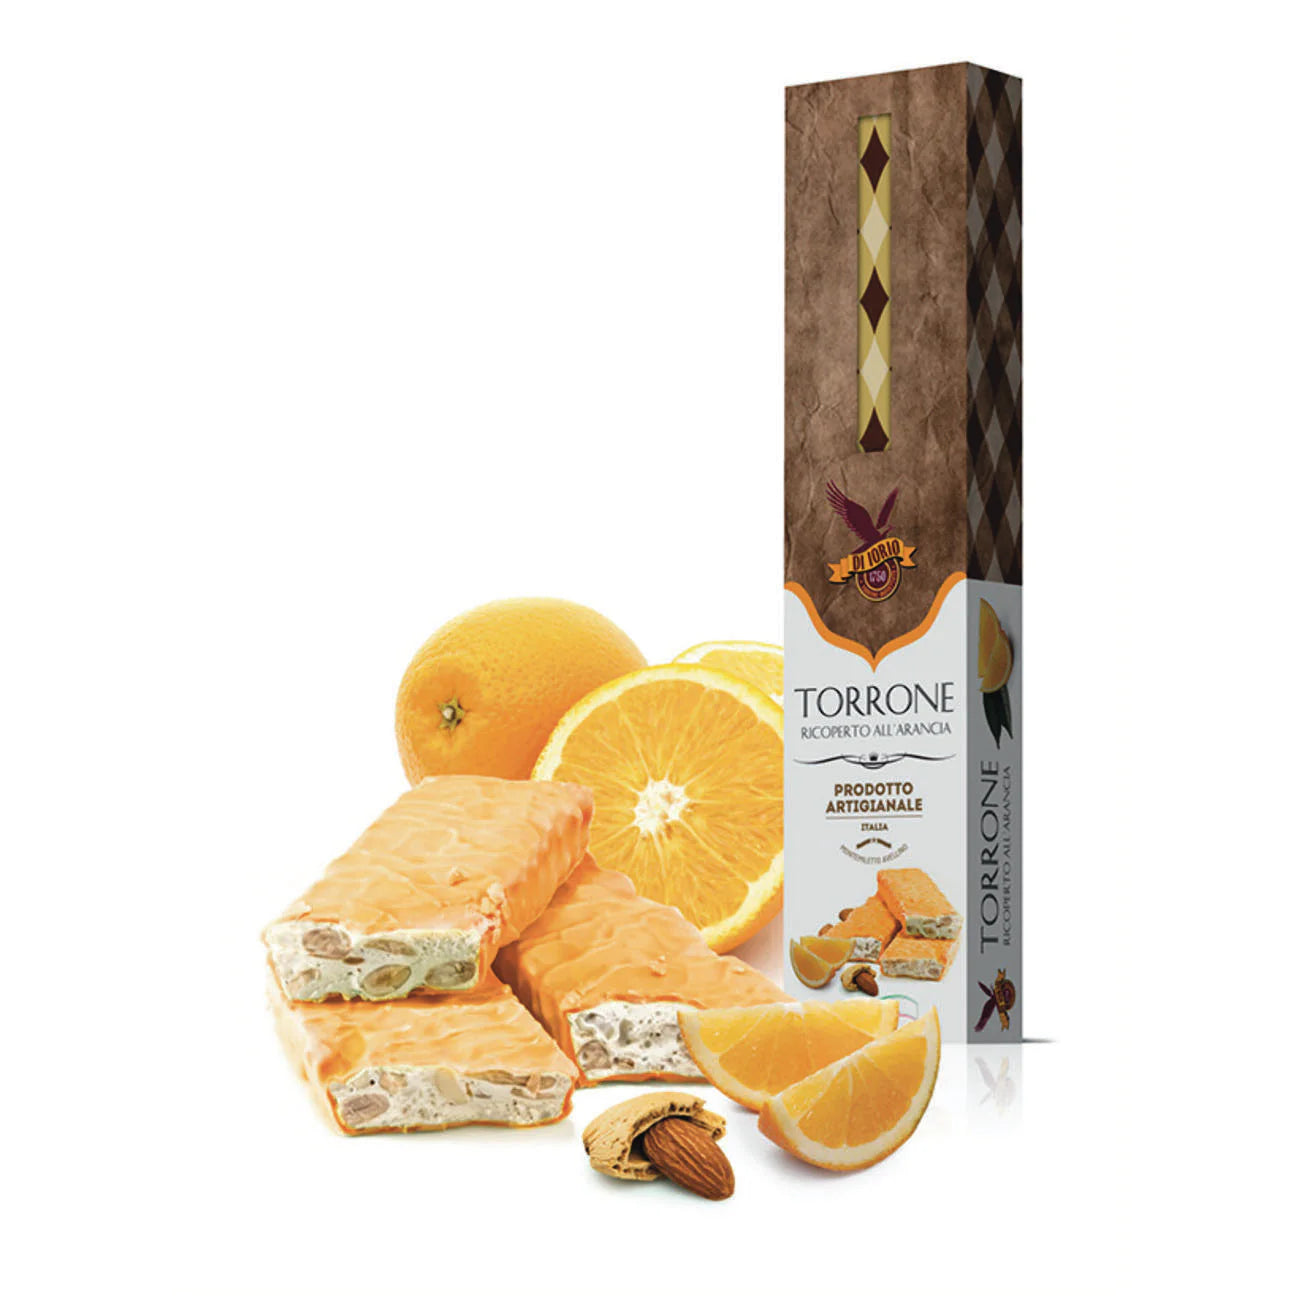 Torrone Soft Almond Nougat Orange Coated